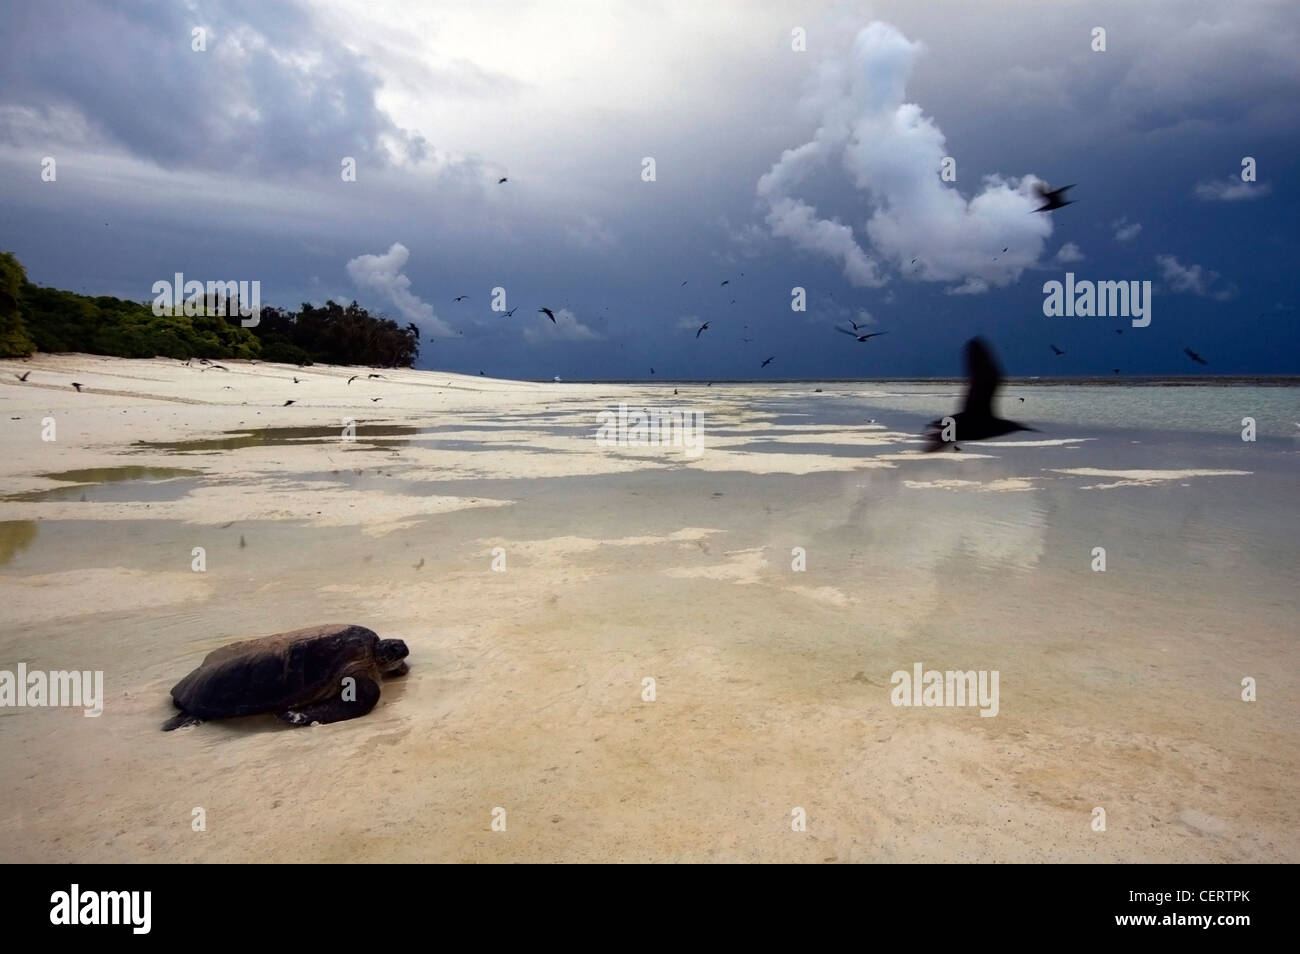 La tortue verte (Chelonia mydas) de retourner à la mer après la ponte par une tempête l'aube, au nord ouest de l'Île, Grande Barrière de Corail Banque D'Images